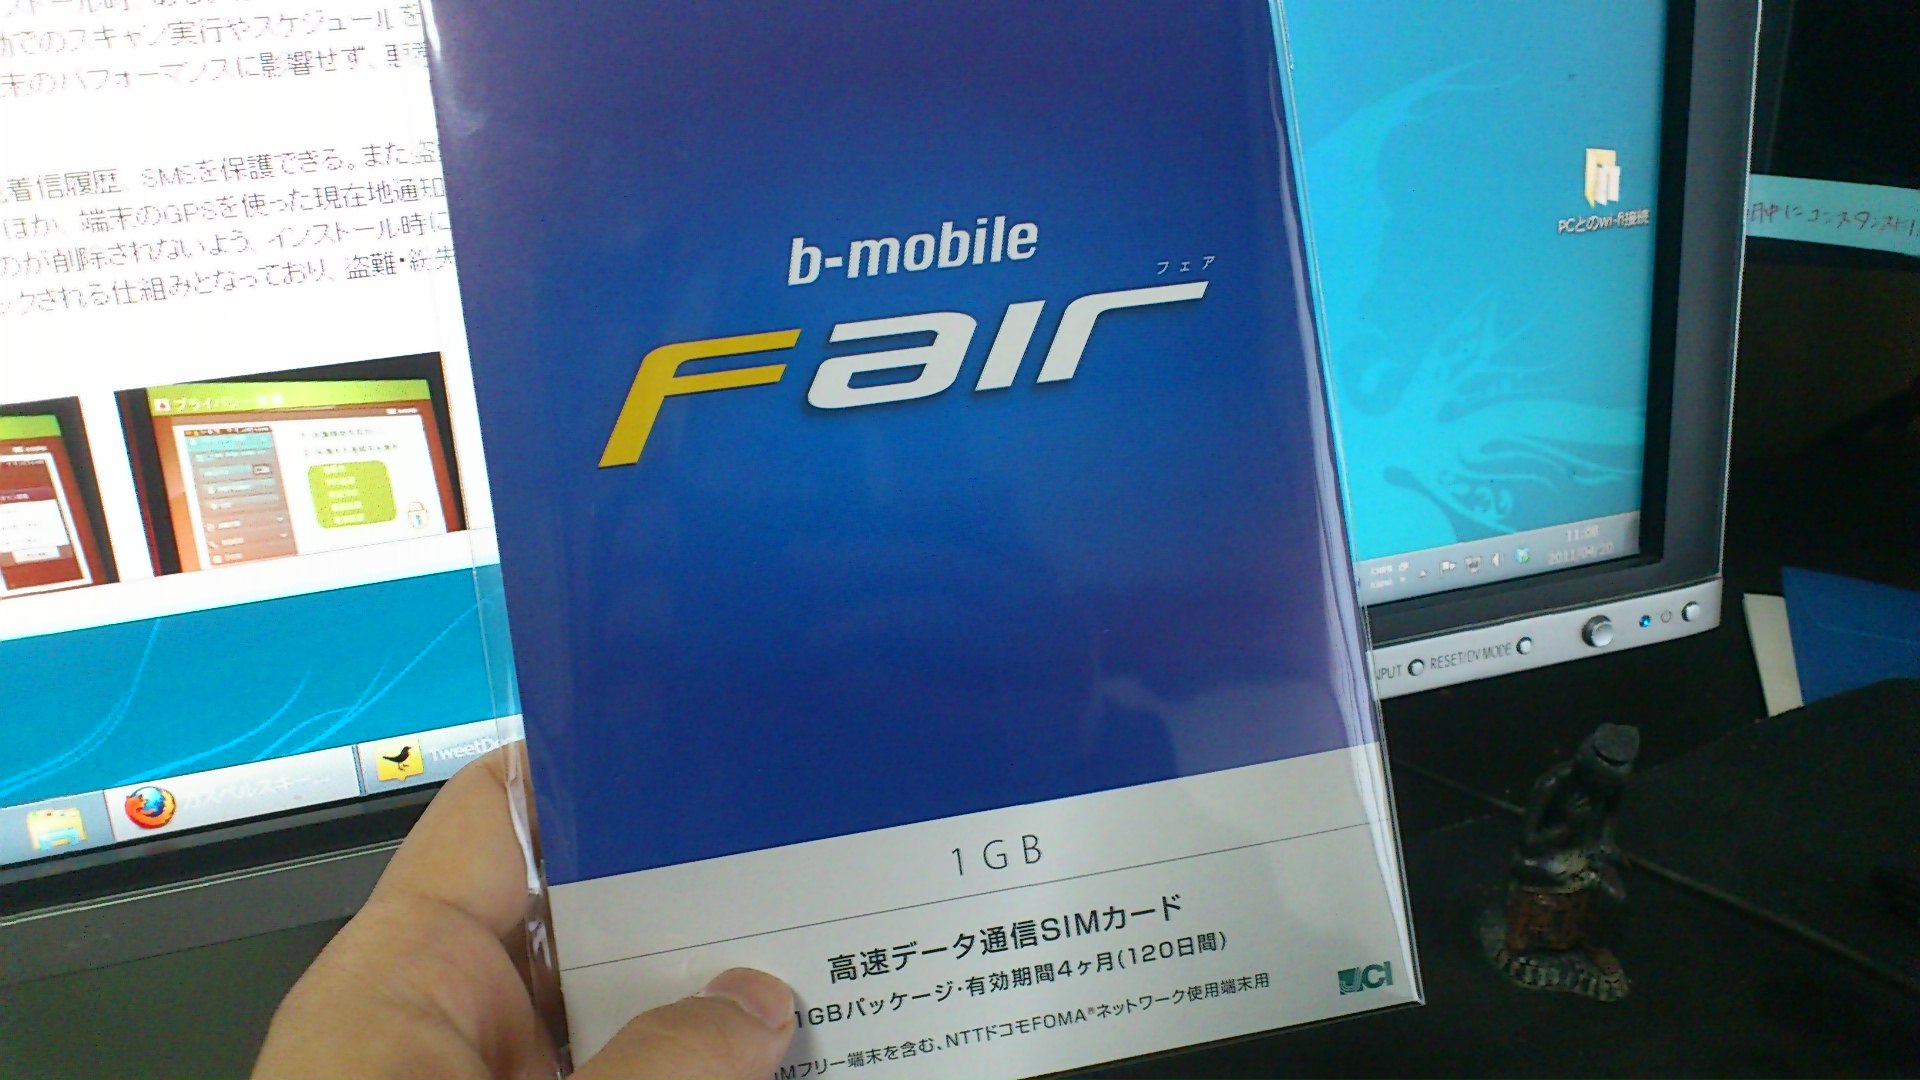 プリペイド式のデータ通信専用SIM「b-mobile Fair」を試してみた – ゼロから始めるスマートフォン